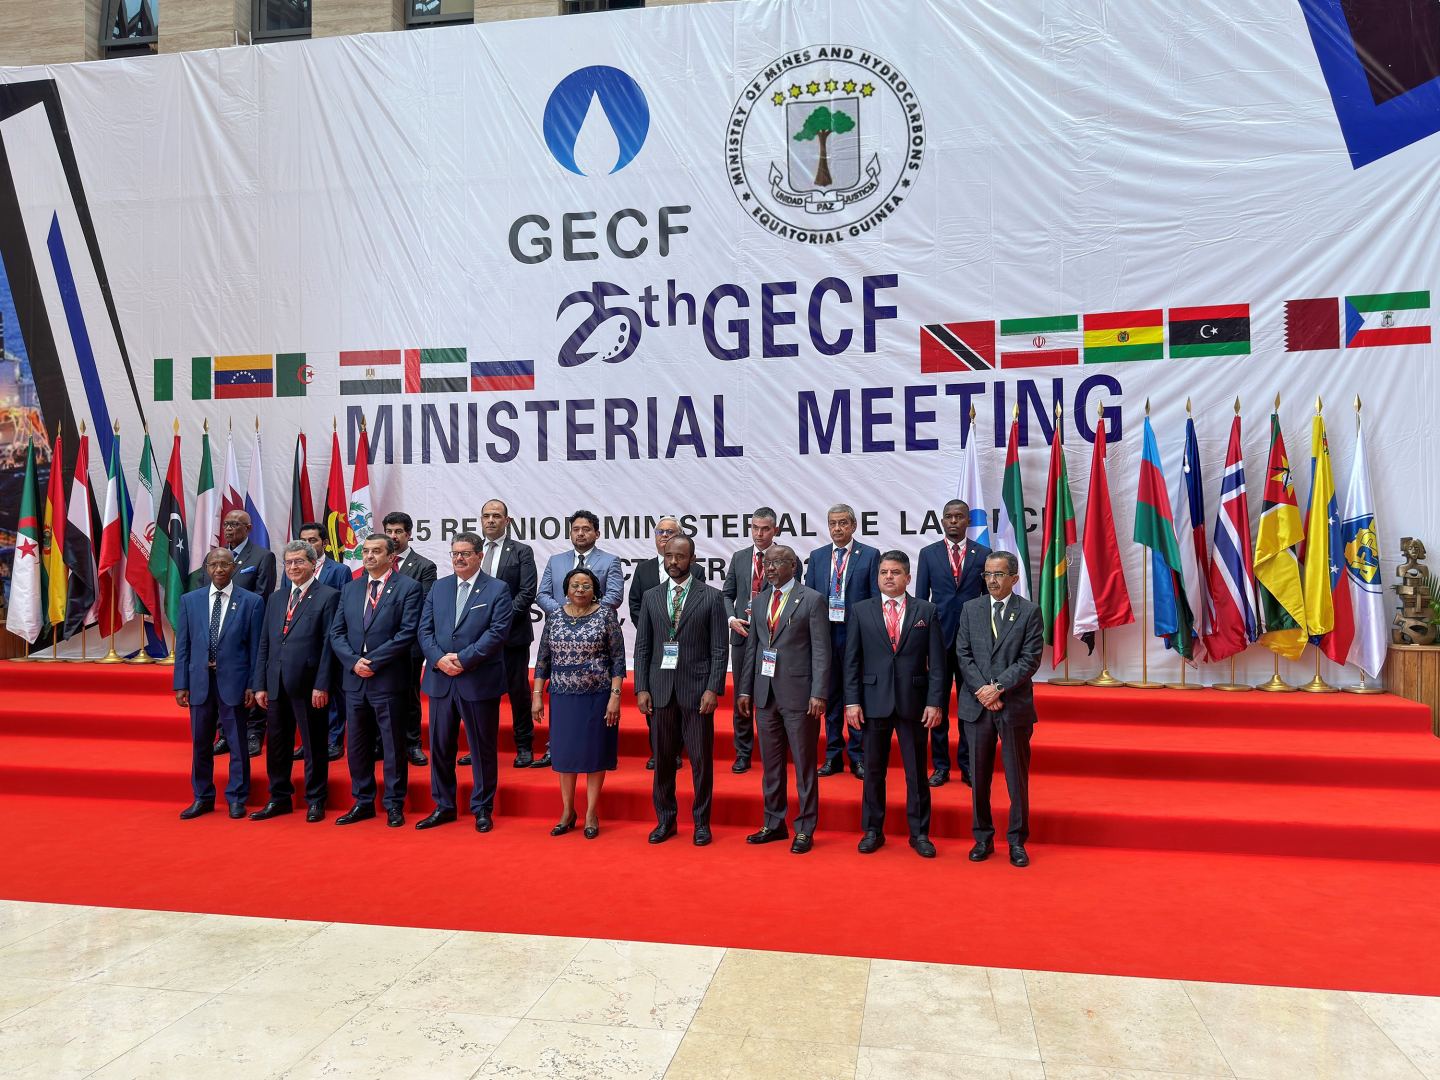 Заместитель министра энергетики Азербайджана обсудил роль природного газа на встрече ФСЭГ (ФОТО)